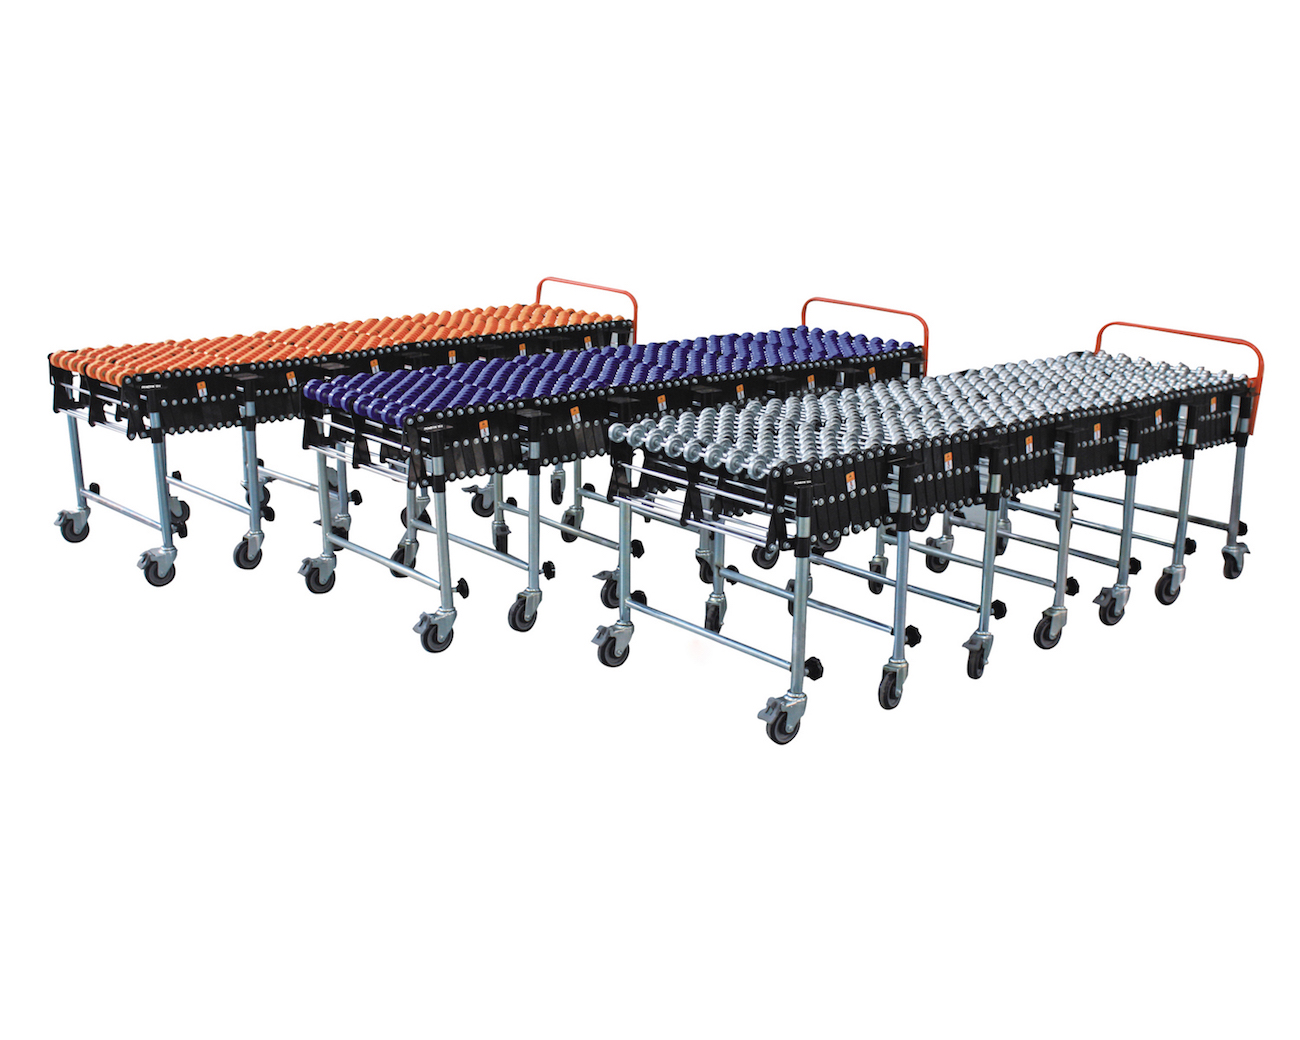 Top flexible skate wheel conveyor conveyor factory for airport-1